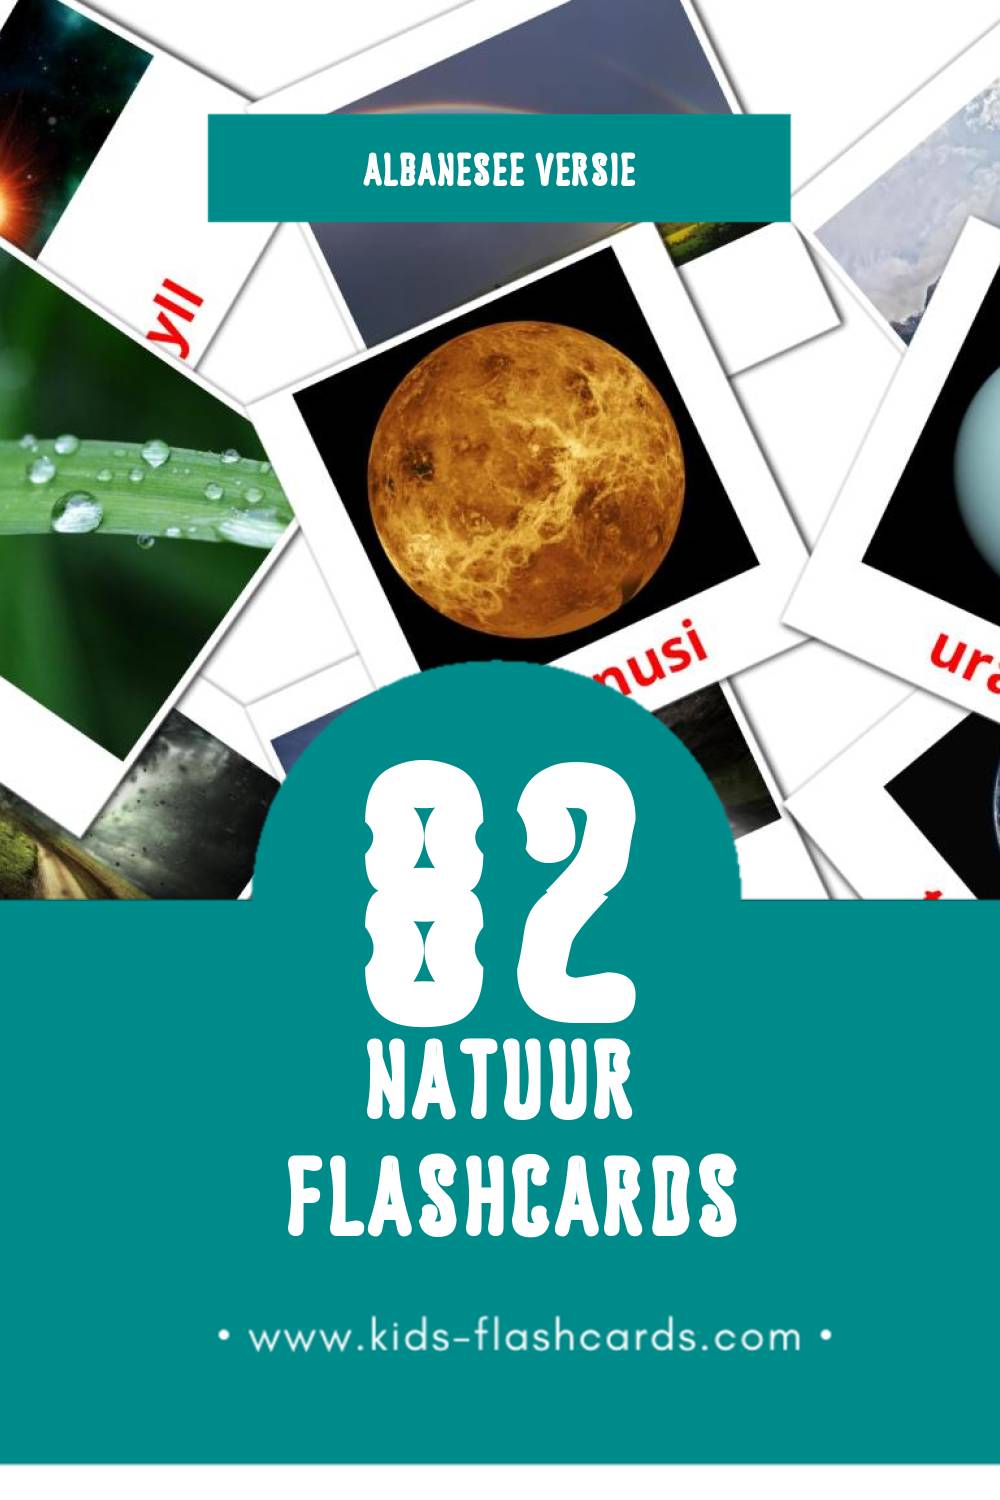 Visuele Natyra Flashcards voor Kleuters (82 kaarten in het Albanese)